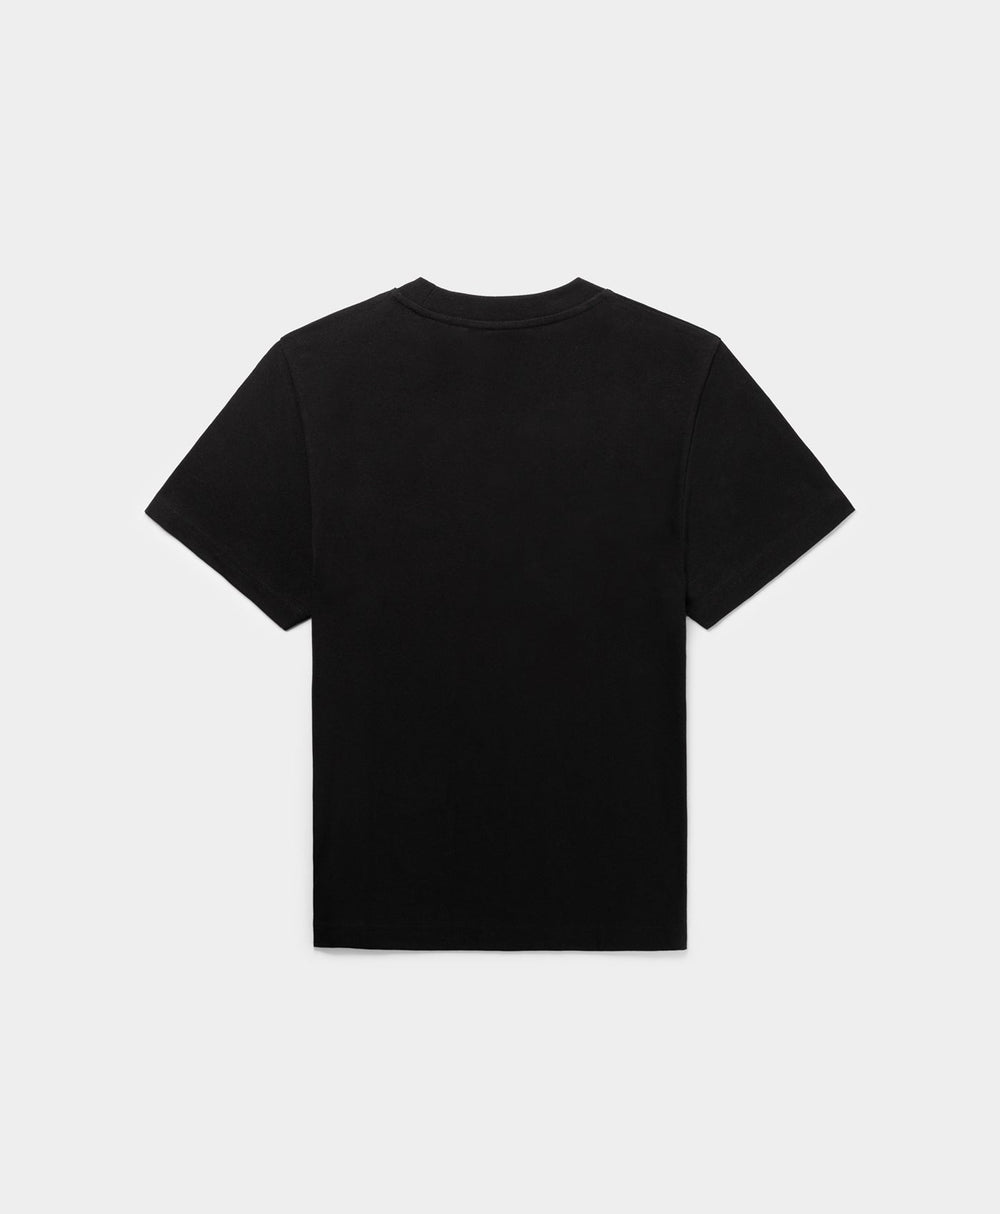 DP - Black Esy Circle T-Shirt - Packshot - Rear